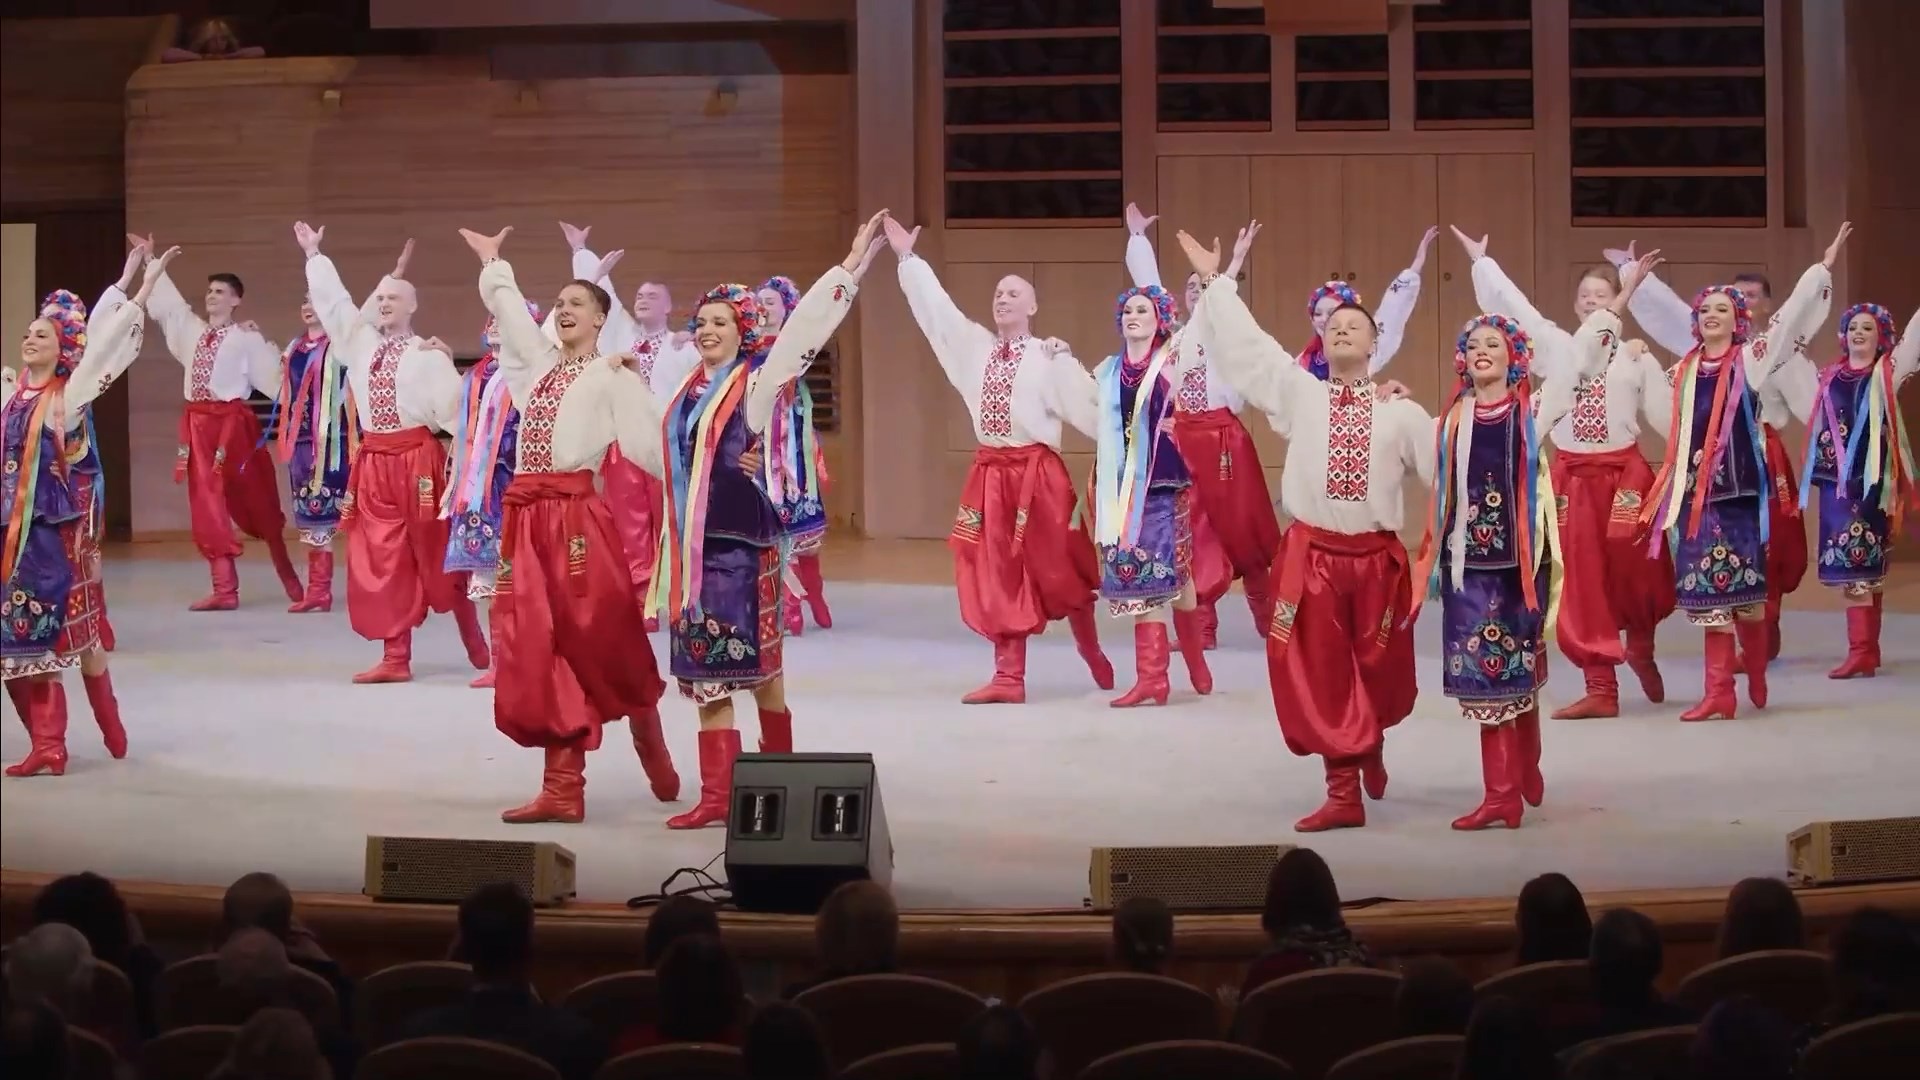 "Украинский танец", Ансамбль "Донбасс". "Ukrainian dance", Ensemble "Donbass".